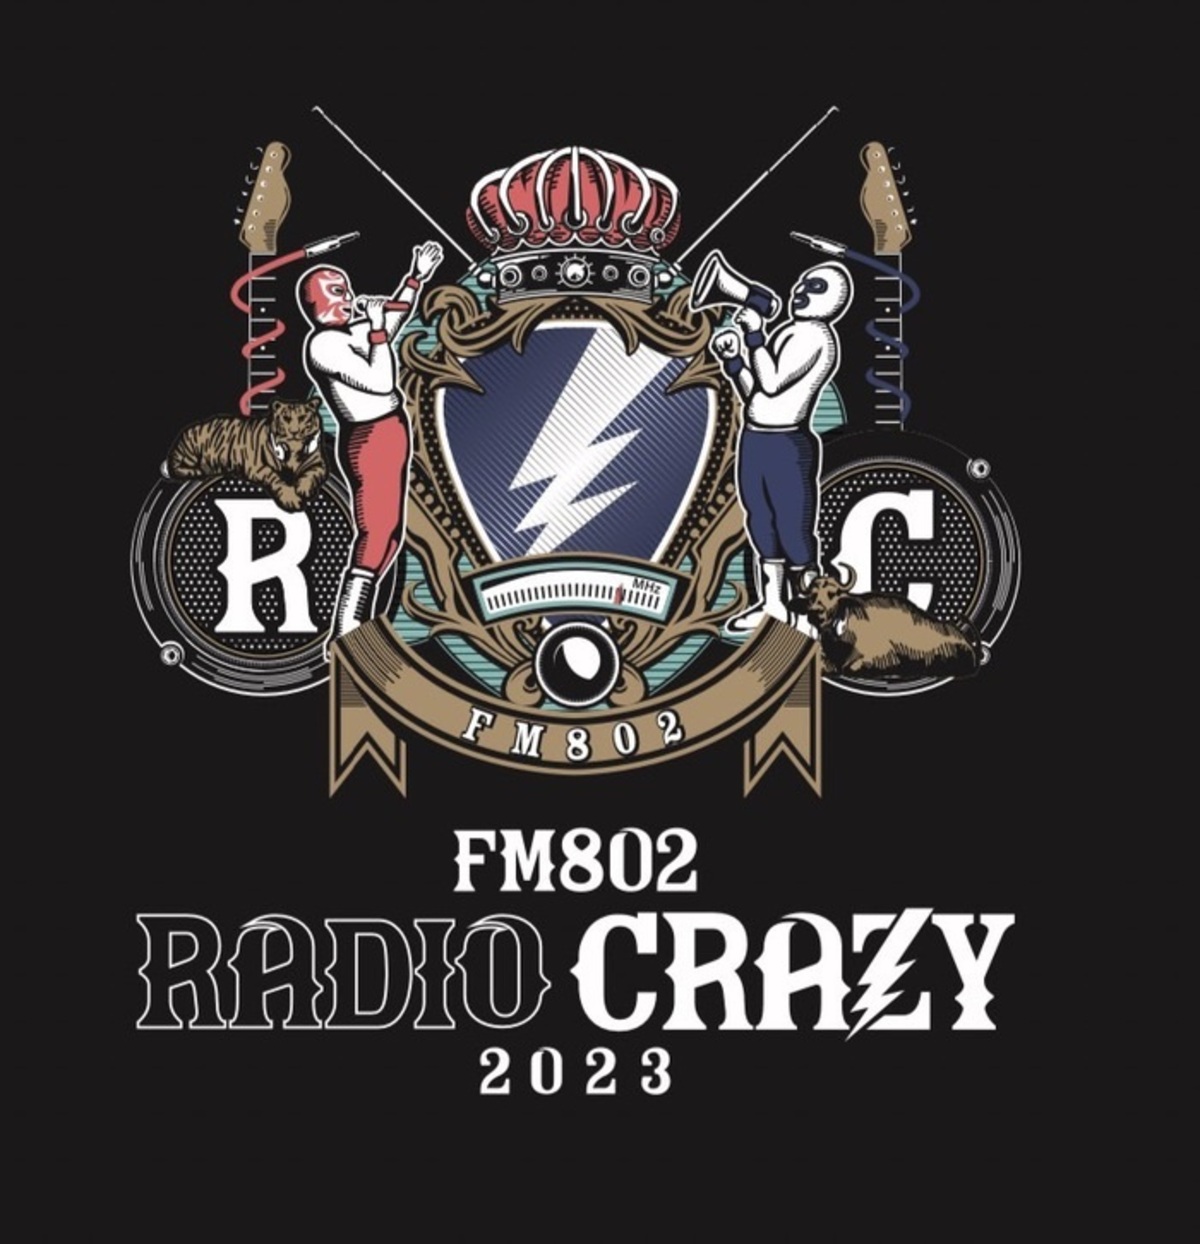 RADIO CRAZY 2023 缶バッジ 04 Limited Sazabys - ミュージシャン